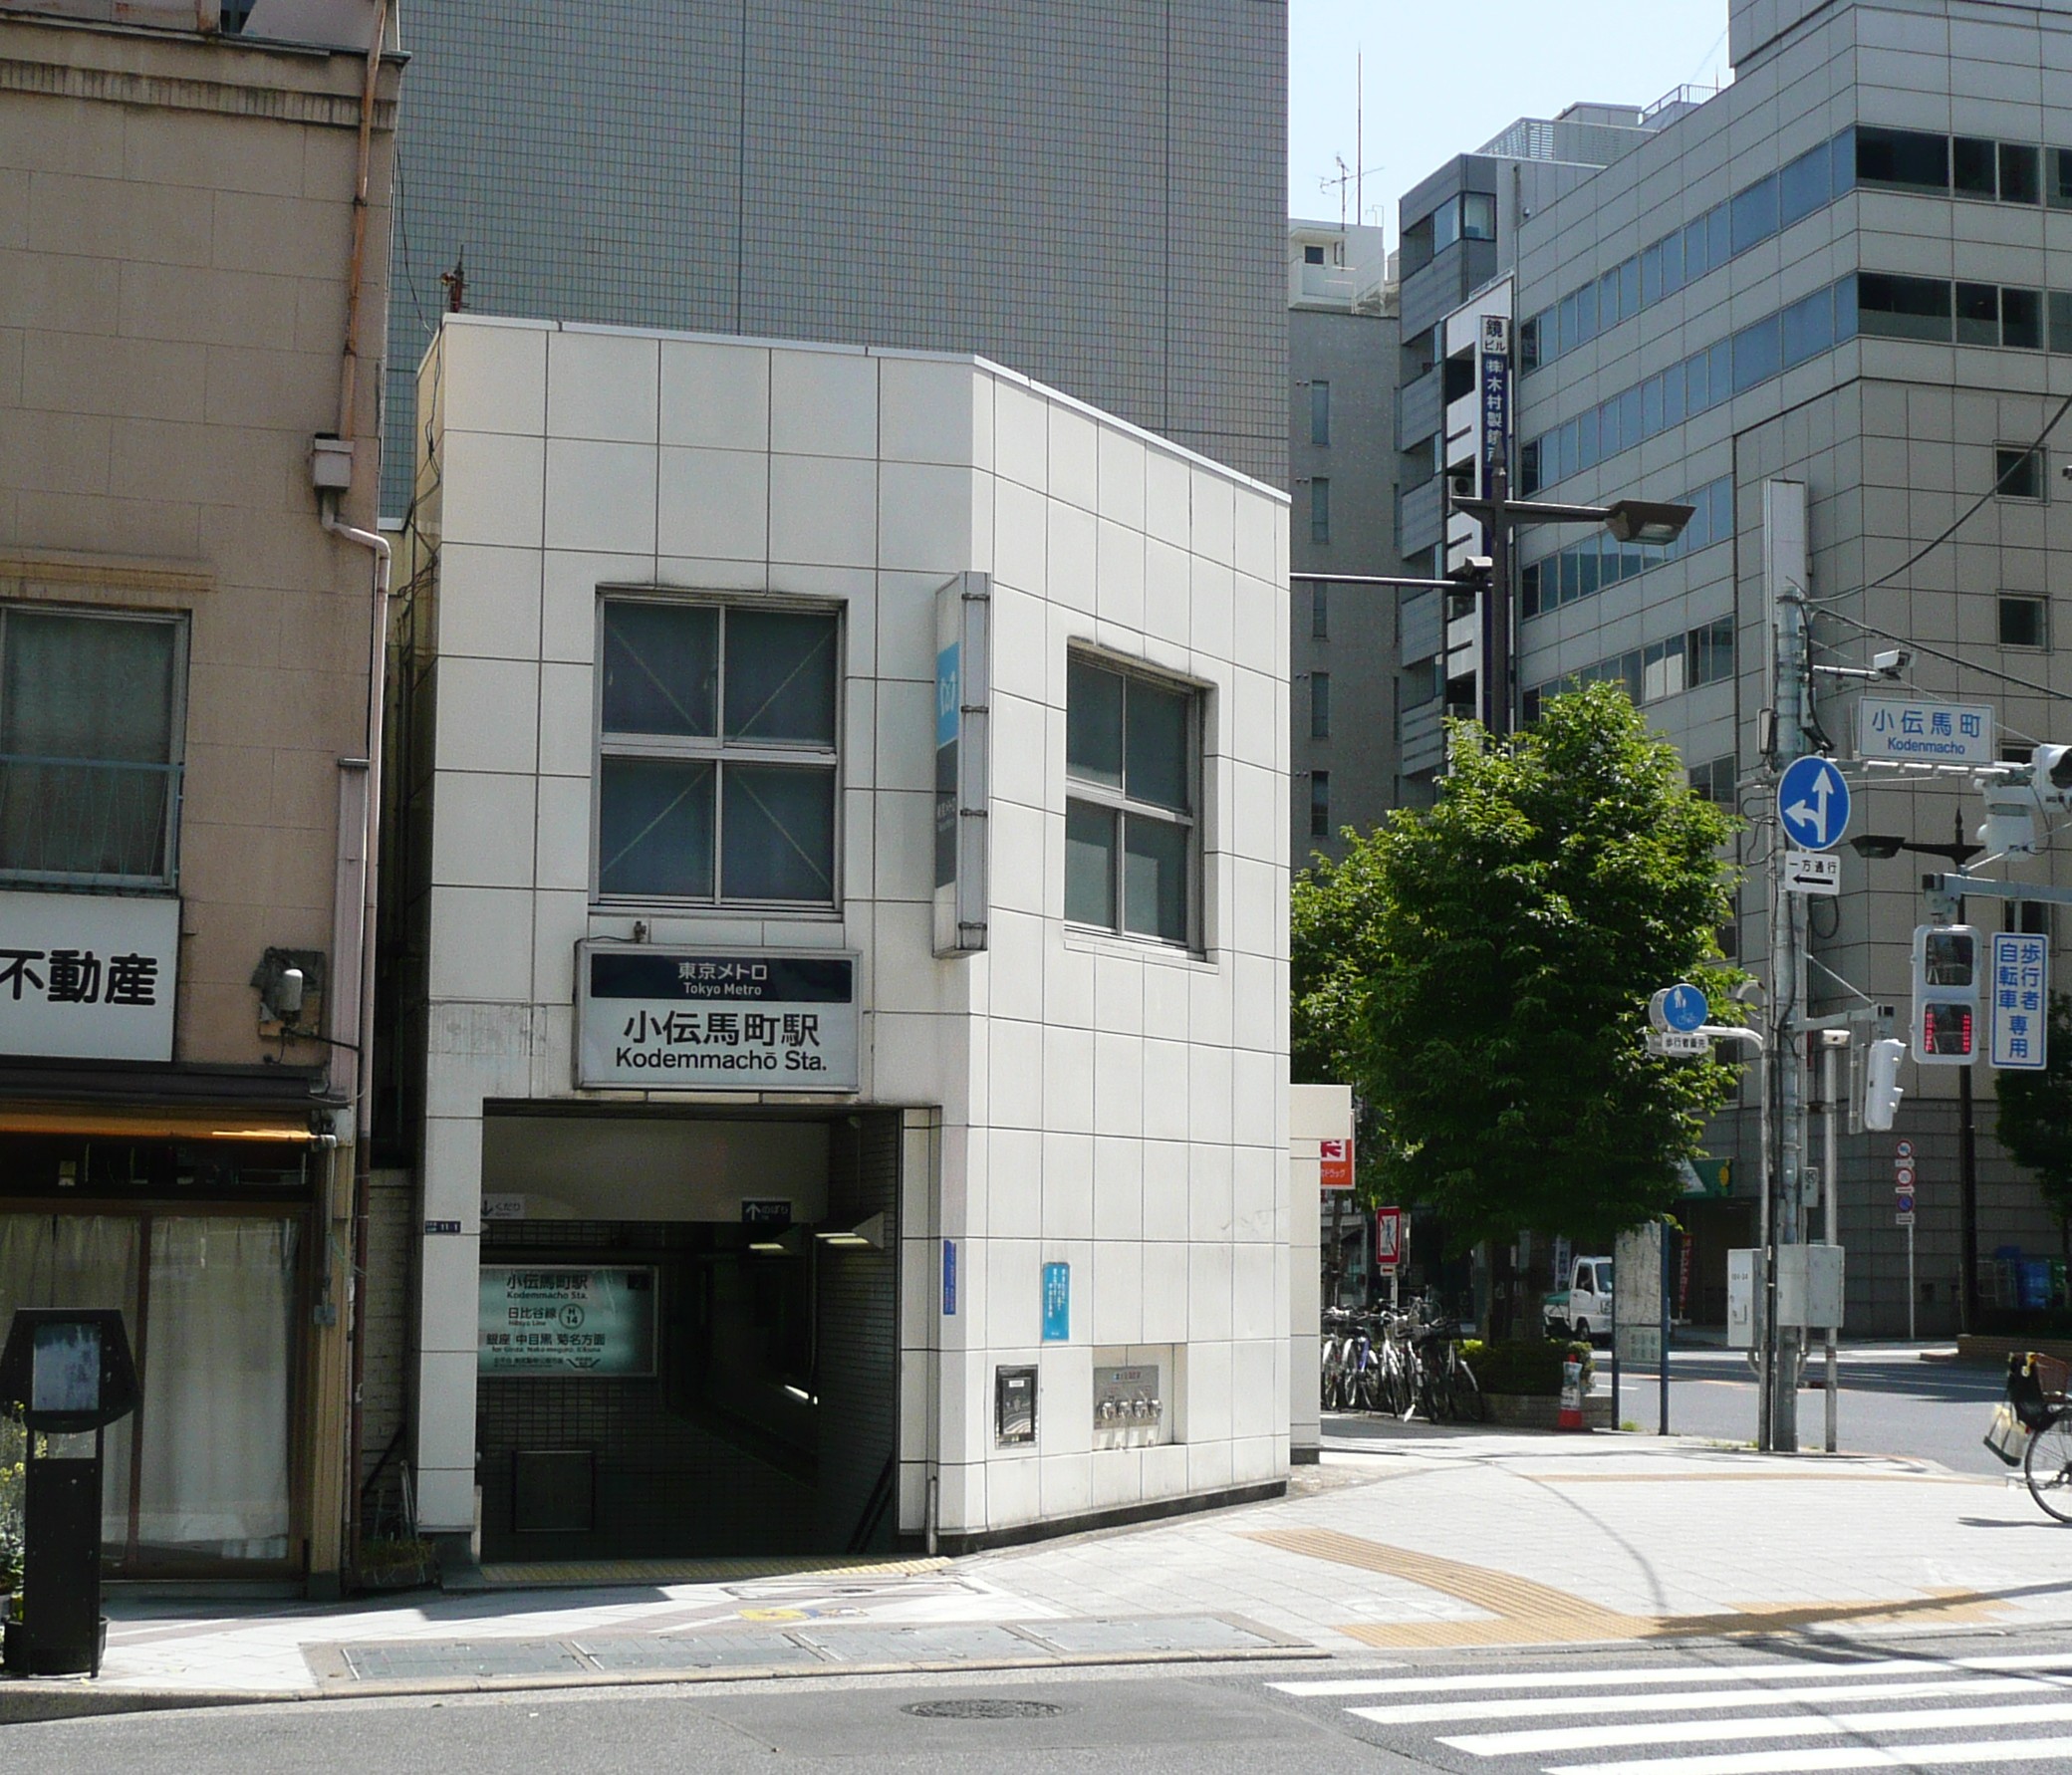 小伝馬町駅 Wikipedia